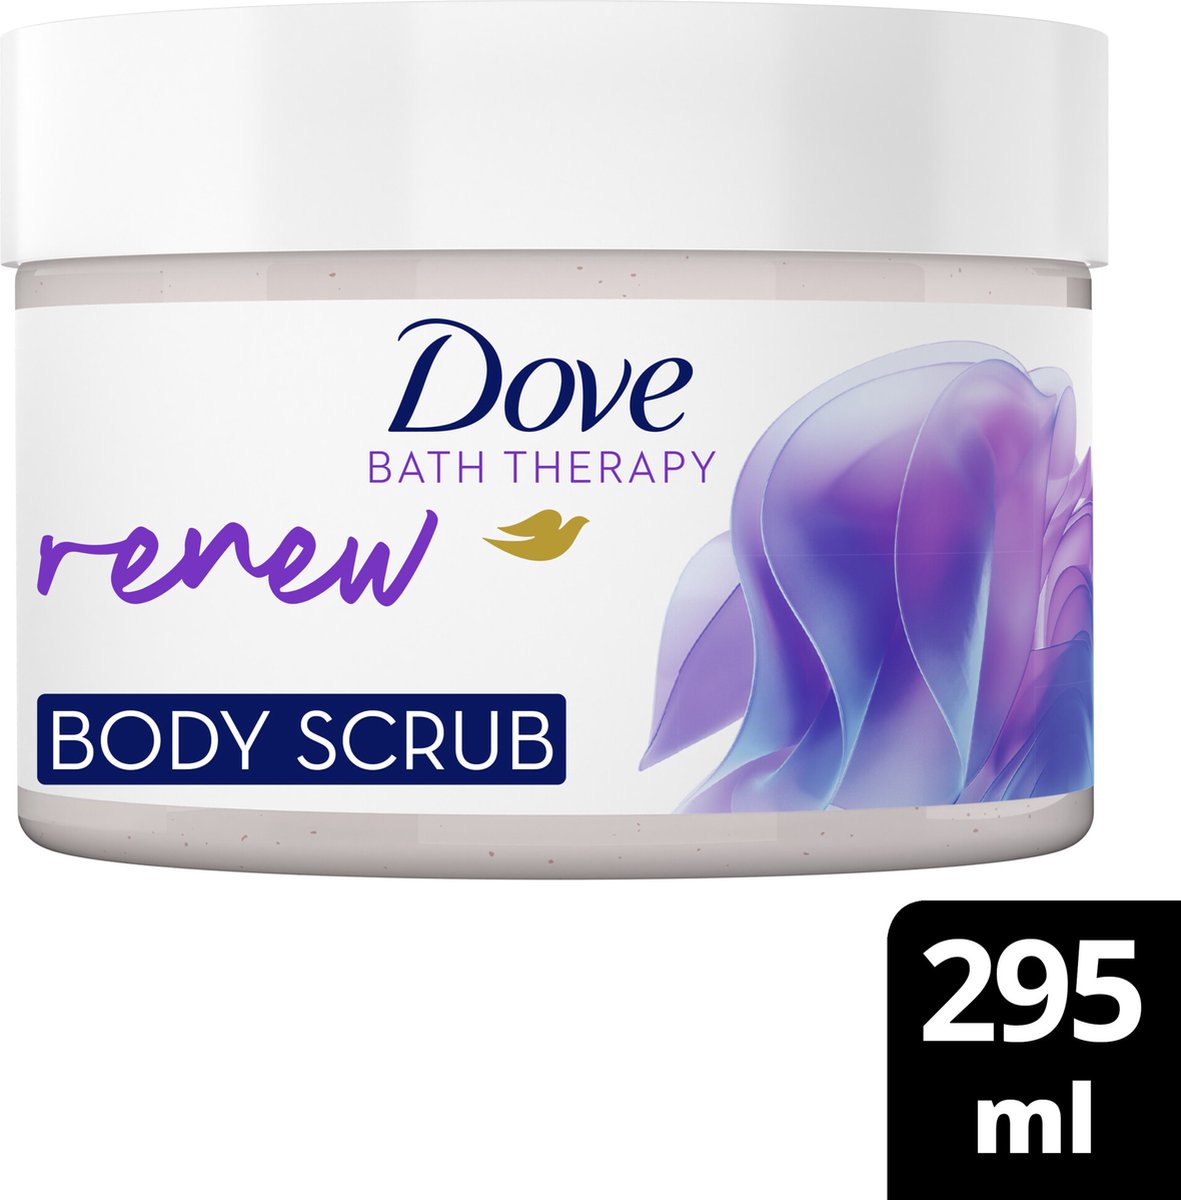 Dove Bath Therapy Bodyscrub - Renew - met Pro-Preptide-technologie en colloïdale havermout - 295 ml - Dove